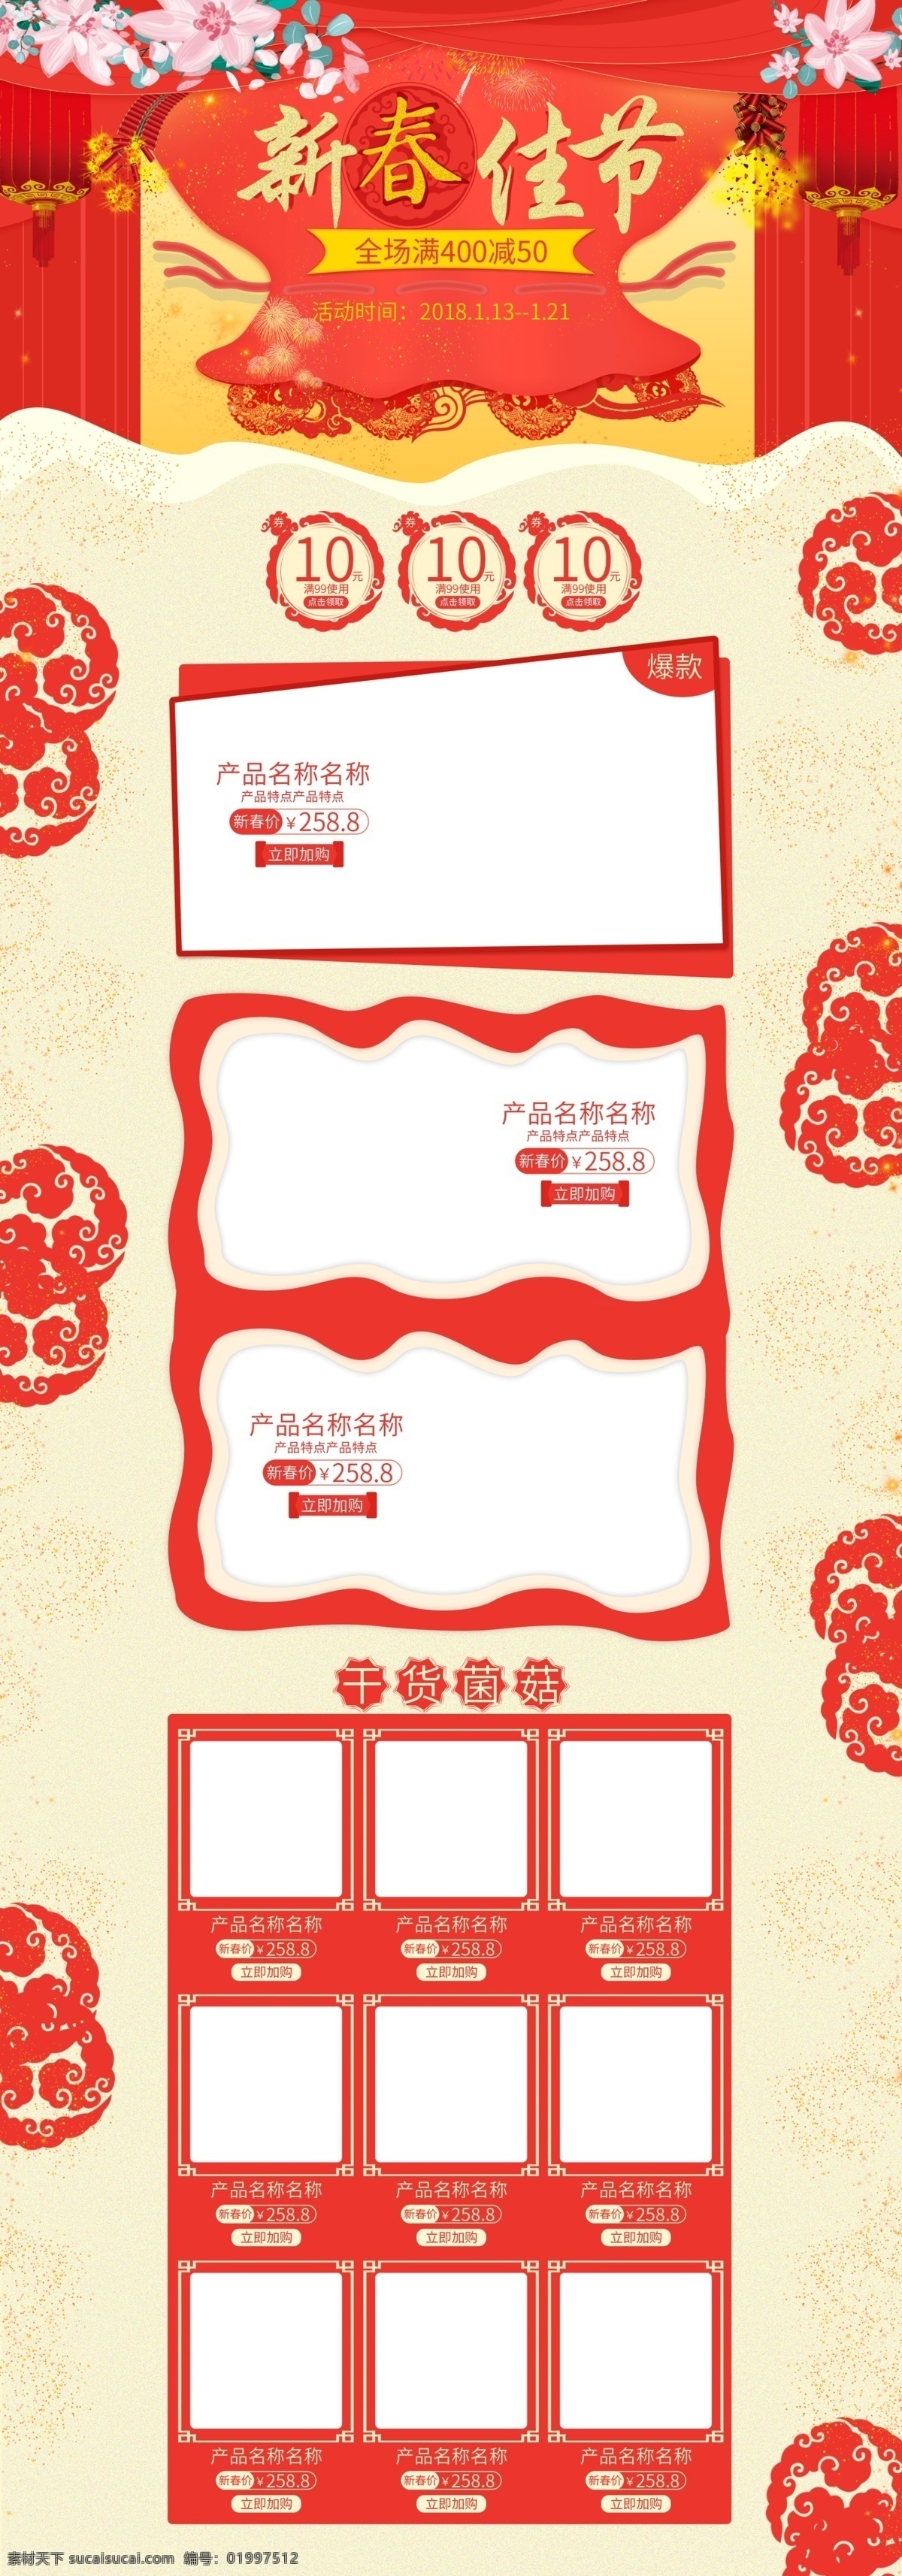 年货 节 红色 简约 喜庆 春节 首页 pc 端 电脑 食品 年货节 钱袋 电脑端